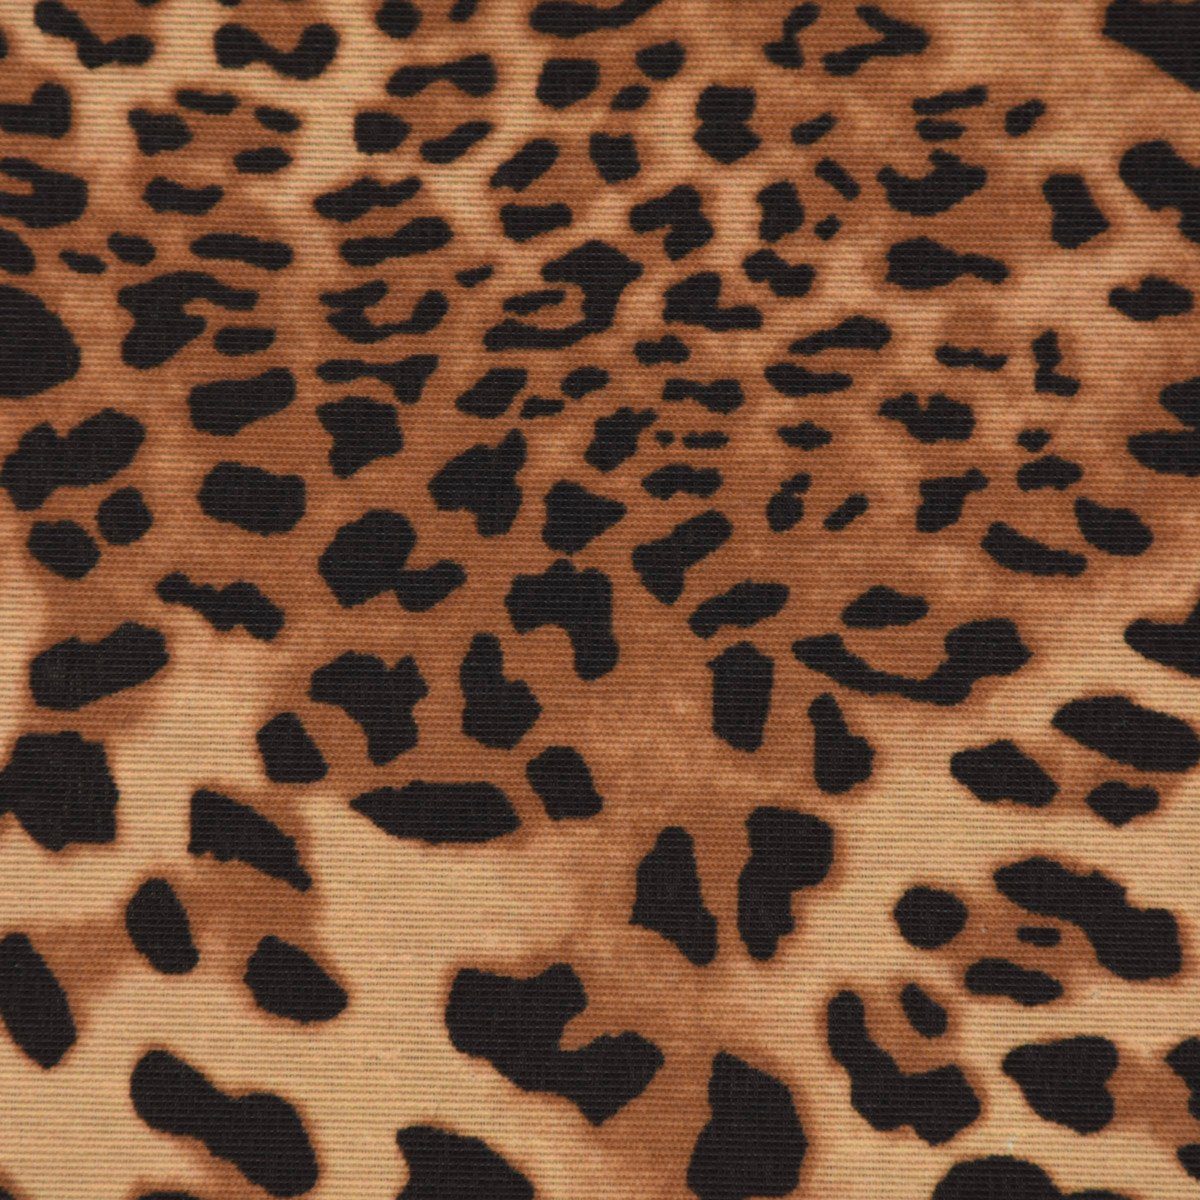 SCHÖNER LEBEN. Tischdecke SCHÖNER LEBEN. div. braun Größen, Tischdecke Leopardenhaut Leo-Skin handmade